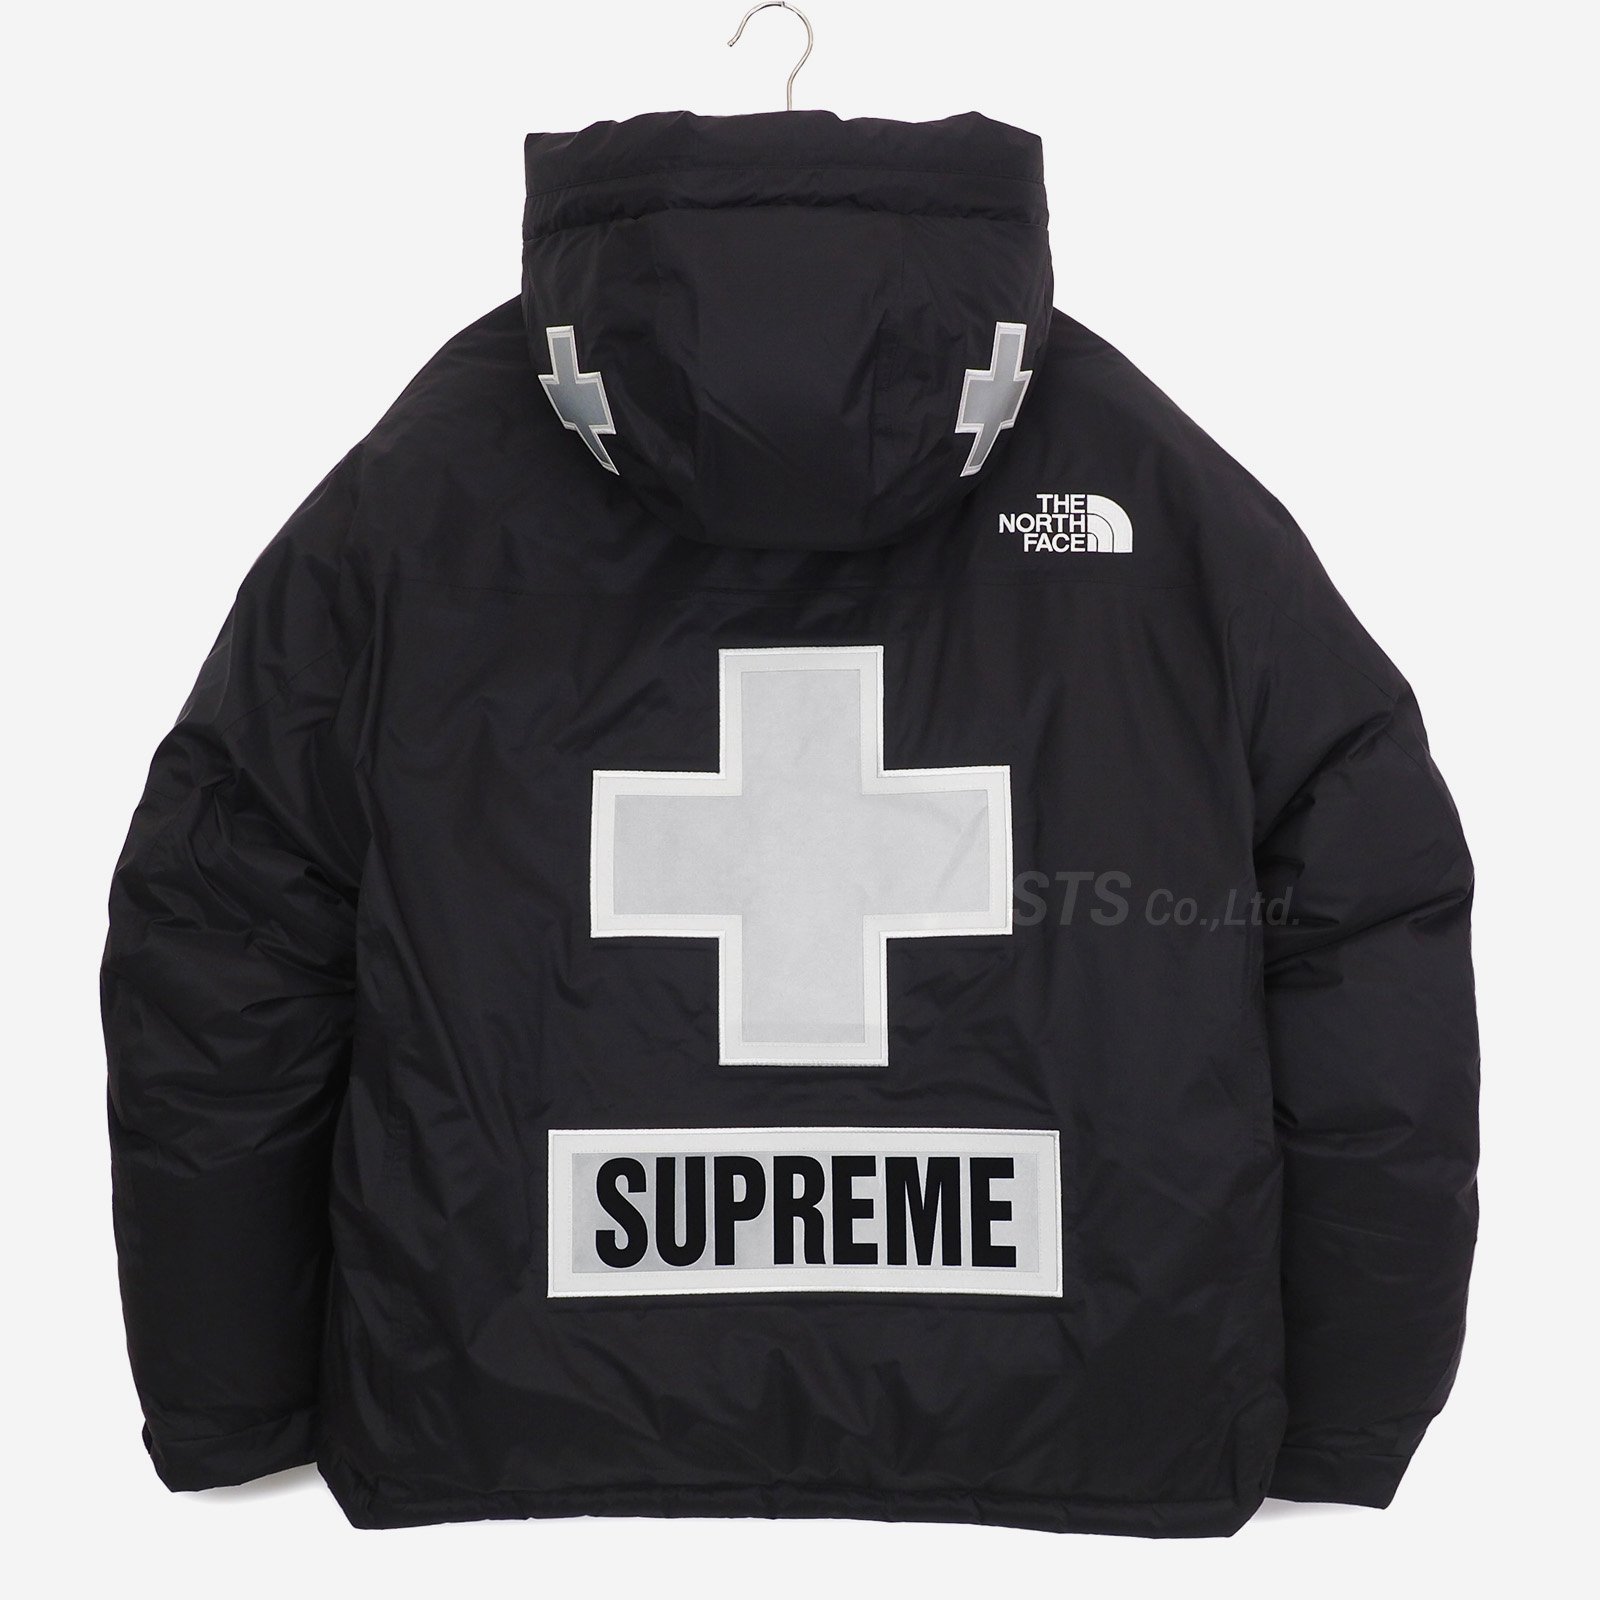 Supreme×the north face サミットシリーズ　jacket54480円で購入したいです